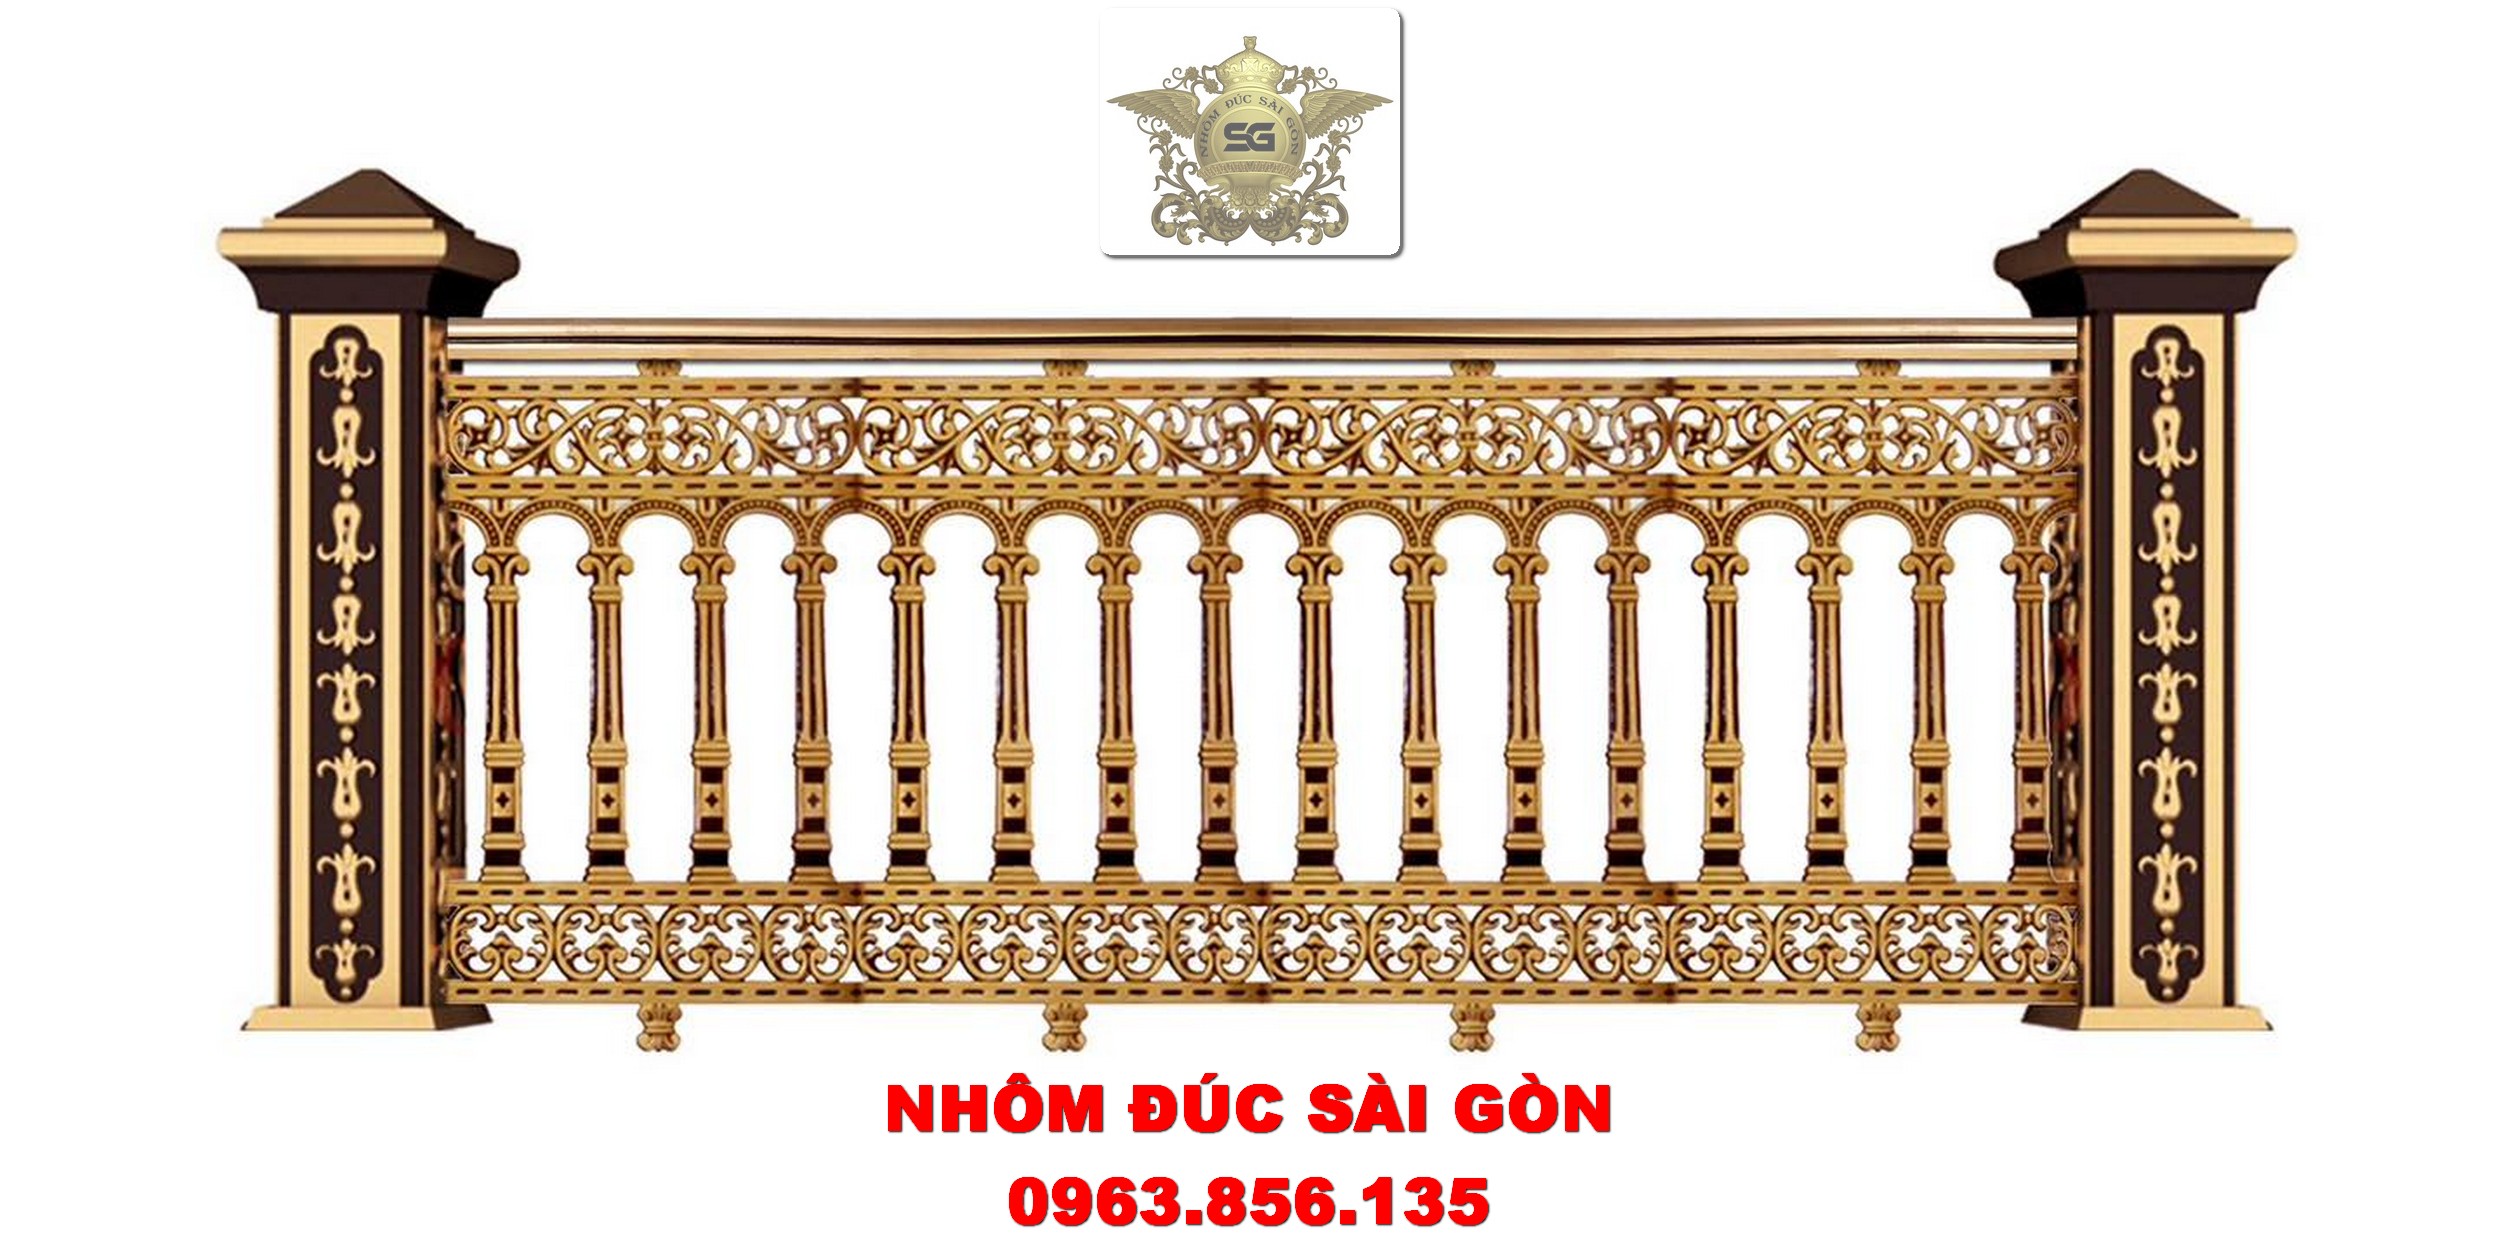 lan-can-nhom-duc_43